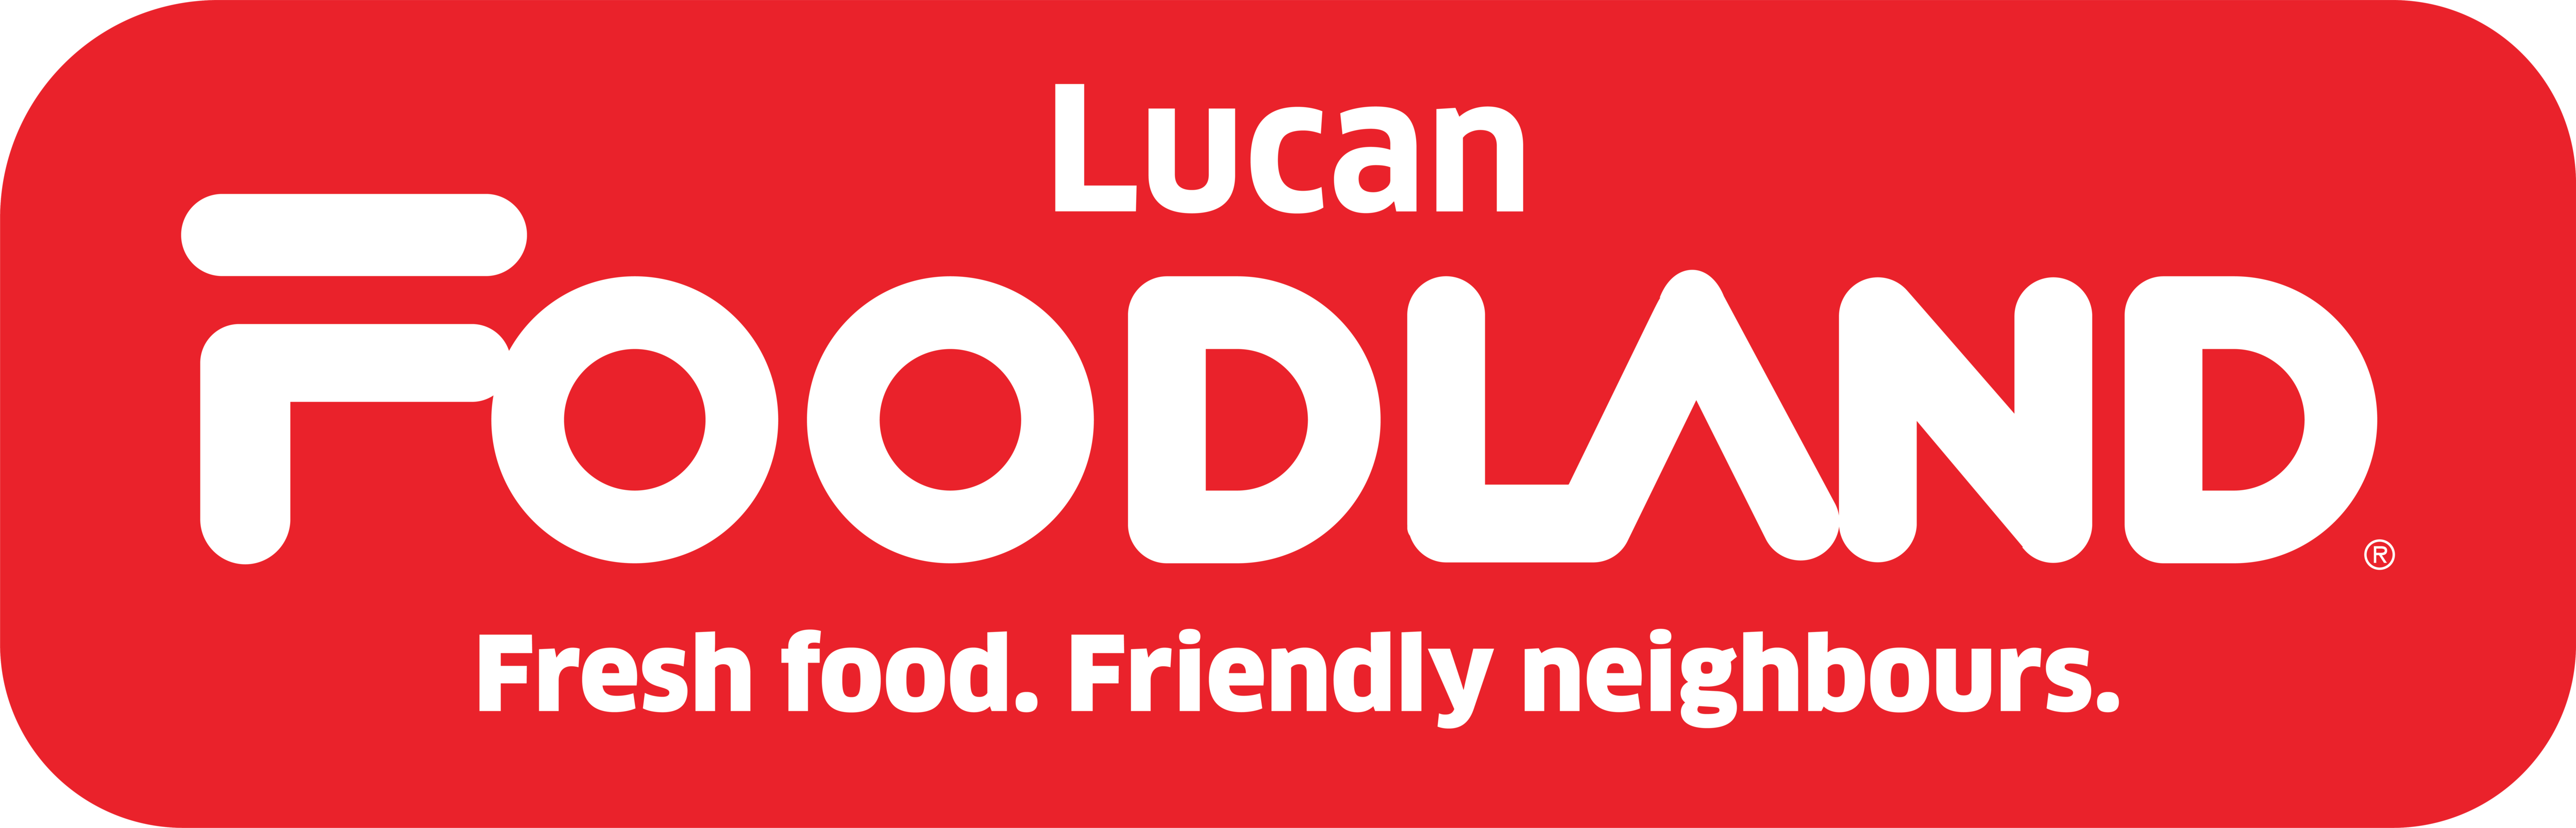 Foodland Lucan